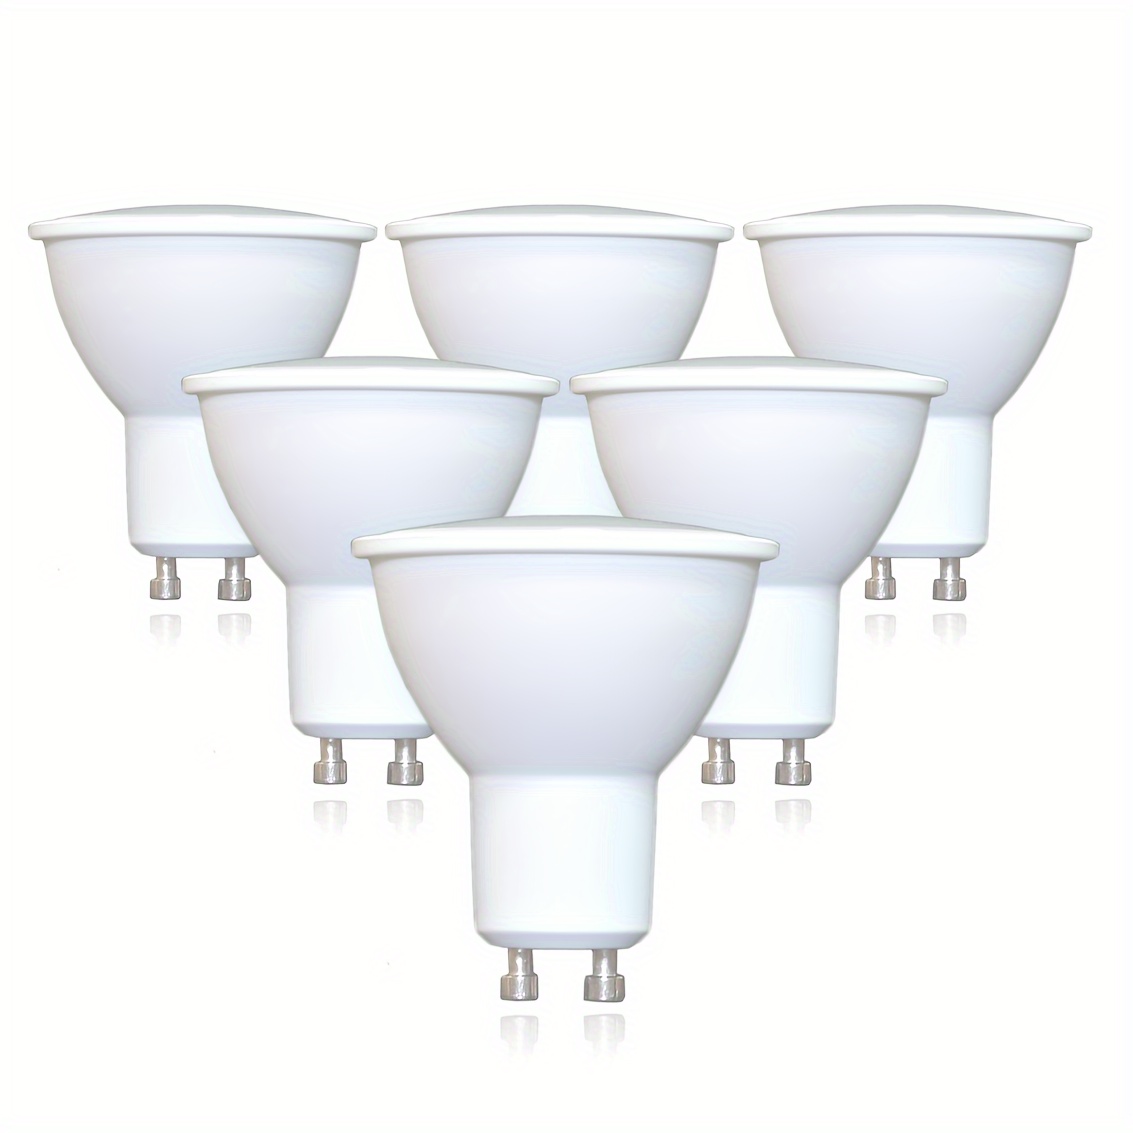 MR16 LED bulbs for Track Lighting , 35W, 50W, GU10 Base, Bi-Pin, Dimma